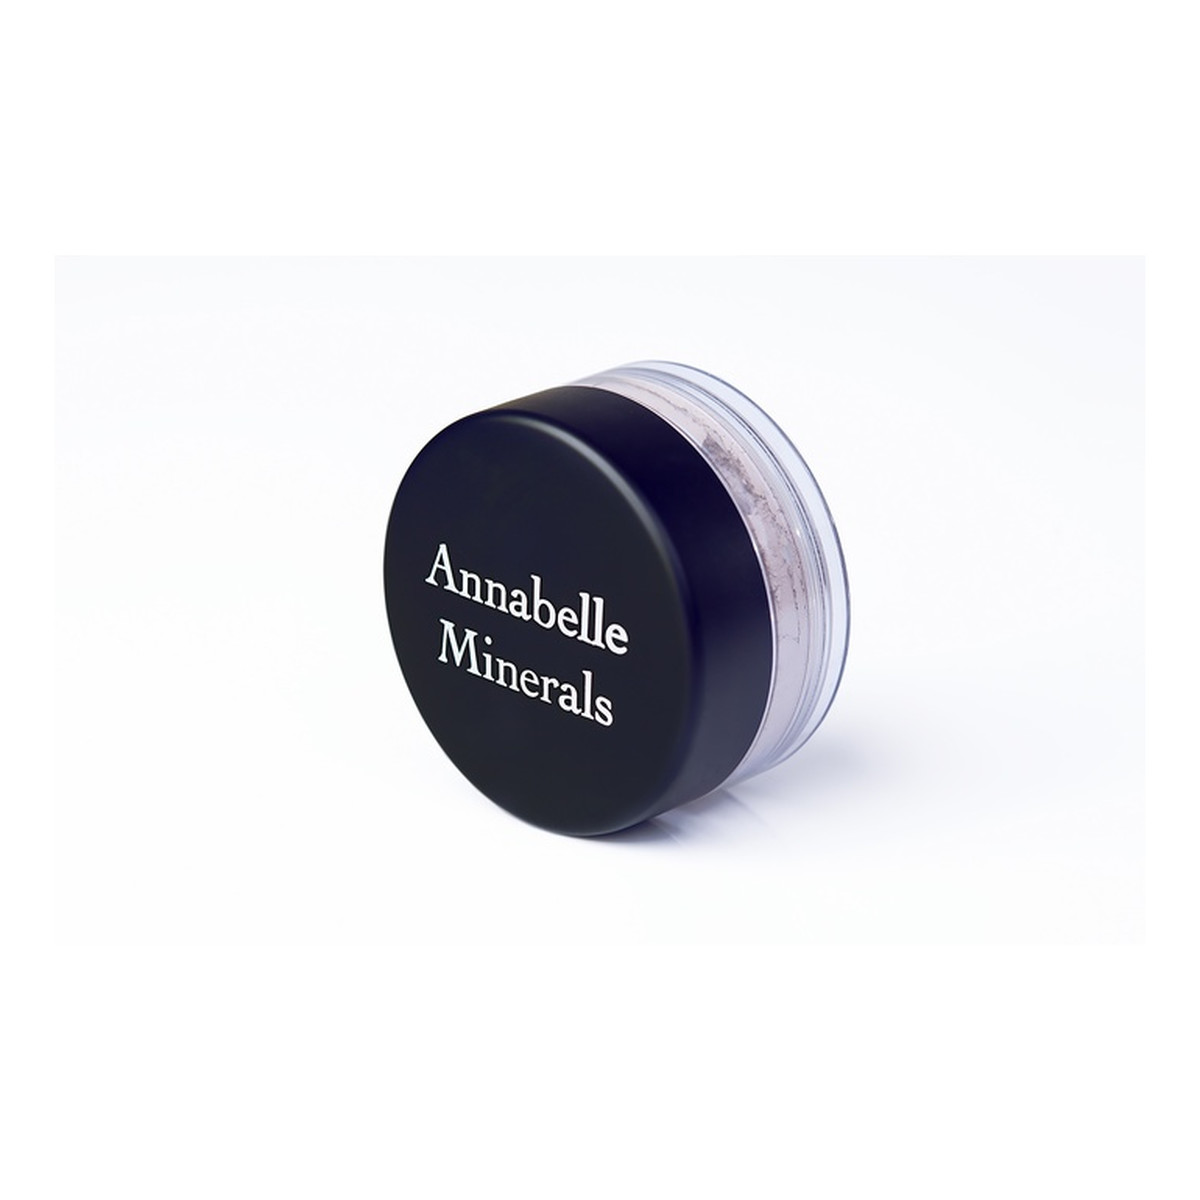 Annabelle Minerals Mineralny cień do powiek Cień glinkowy 3g